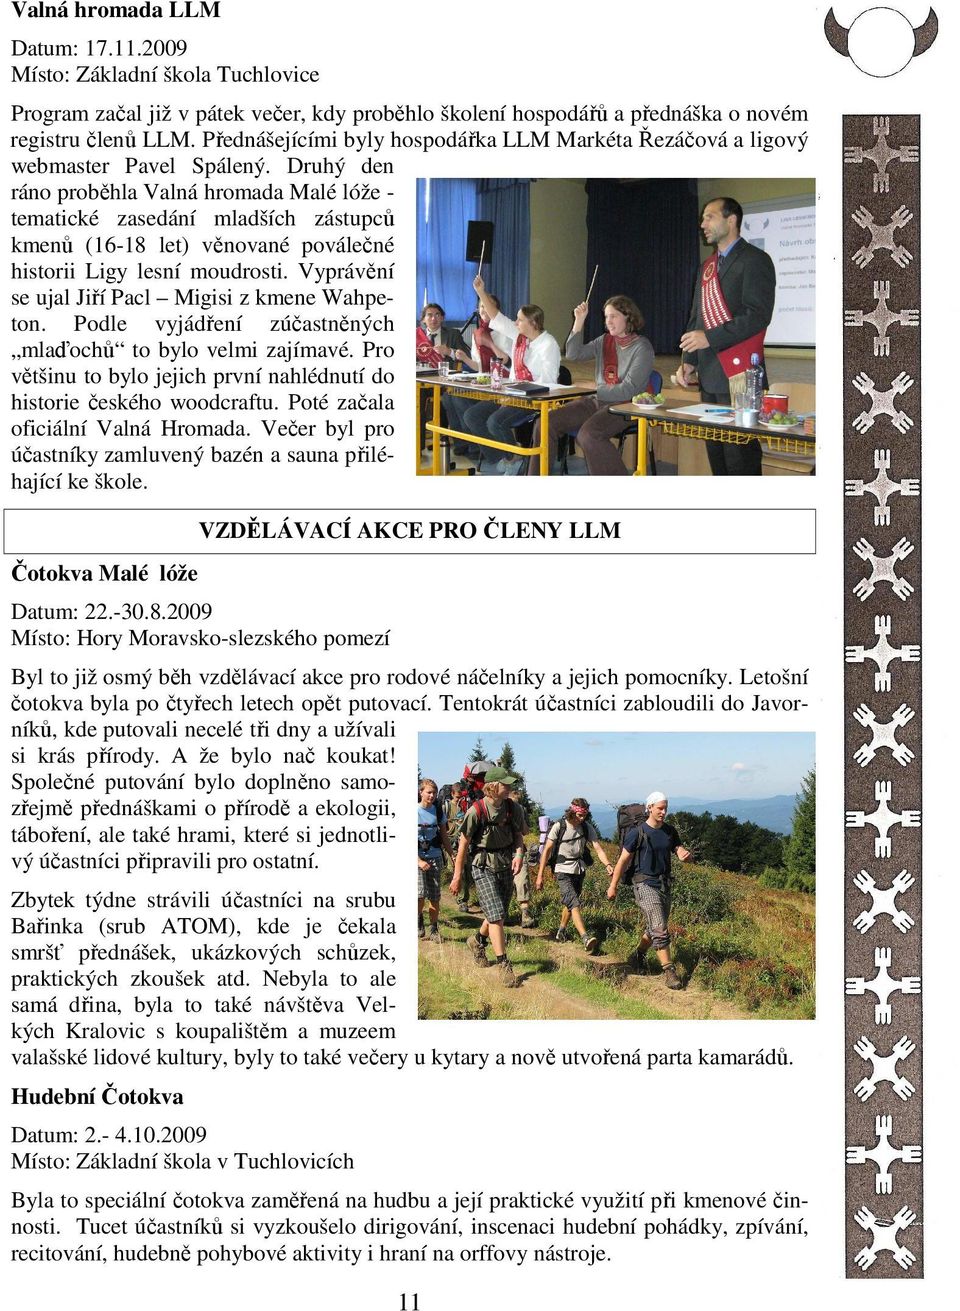 Druhý den ráno proběhla Valná hromada Malé lóže - tematické zasedání mladších zástupců kmenů (16-18 let) věnované poválečné historii Ligy lesní moudrosti.